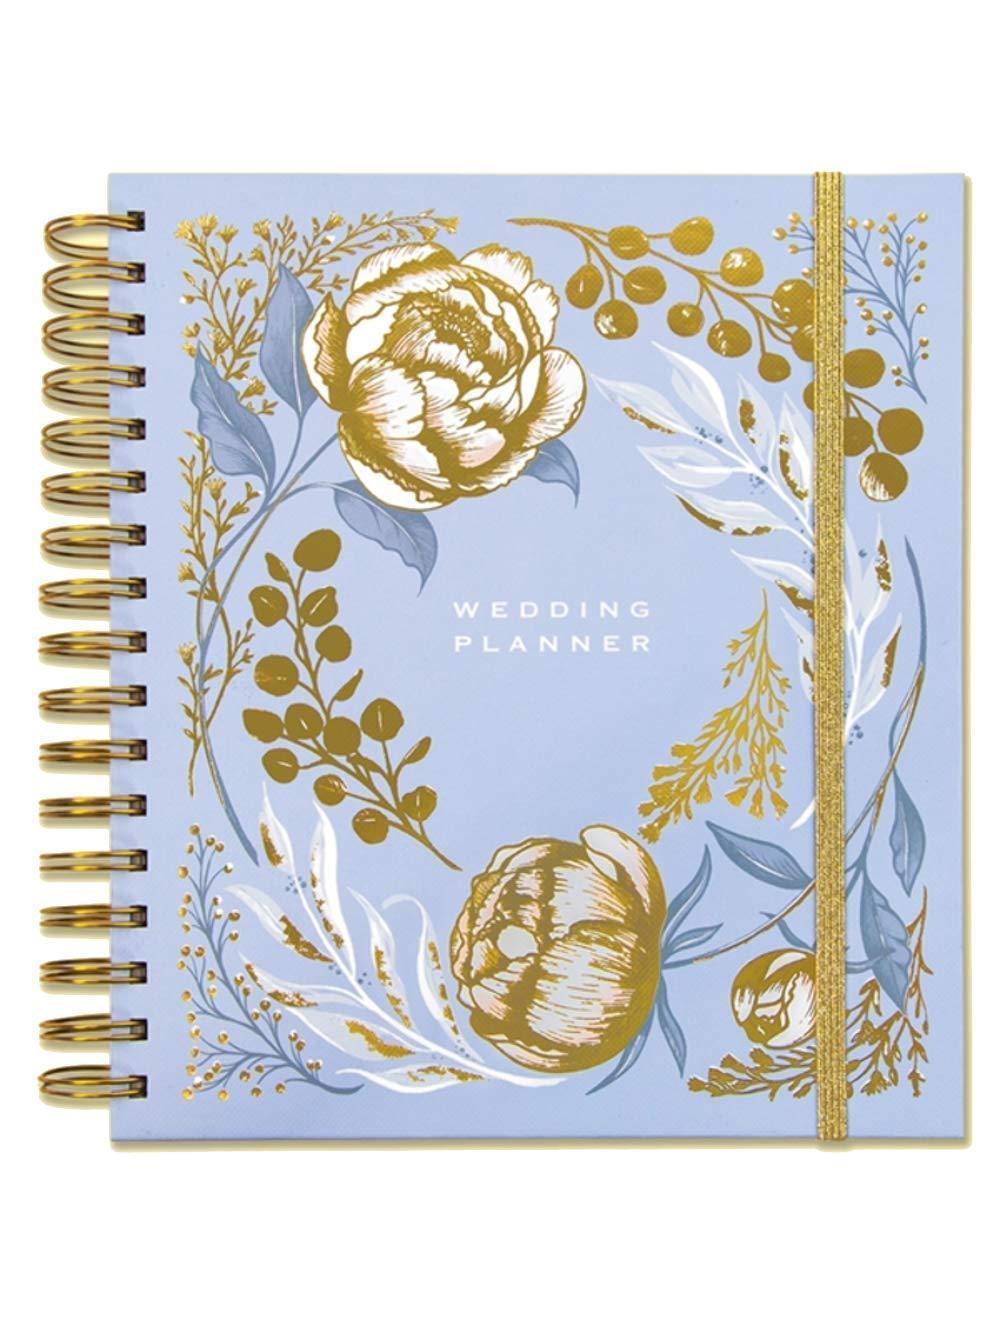 Rachel Ellen Planners Powder Blue Floral Design Wedding Planner